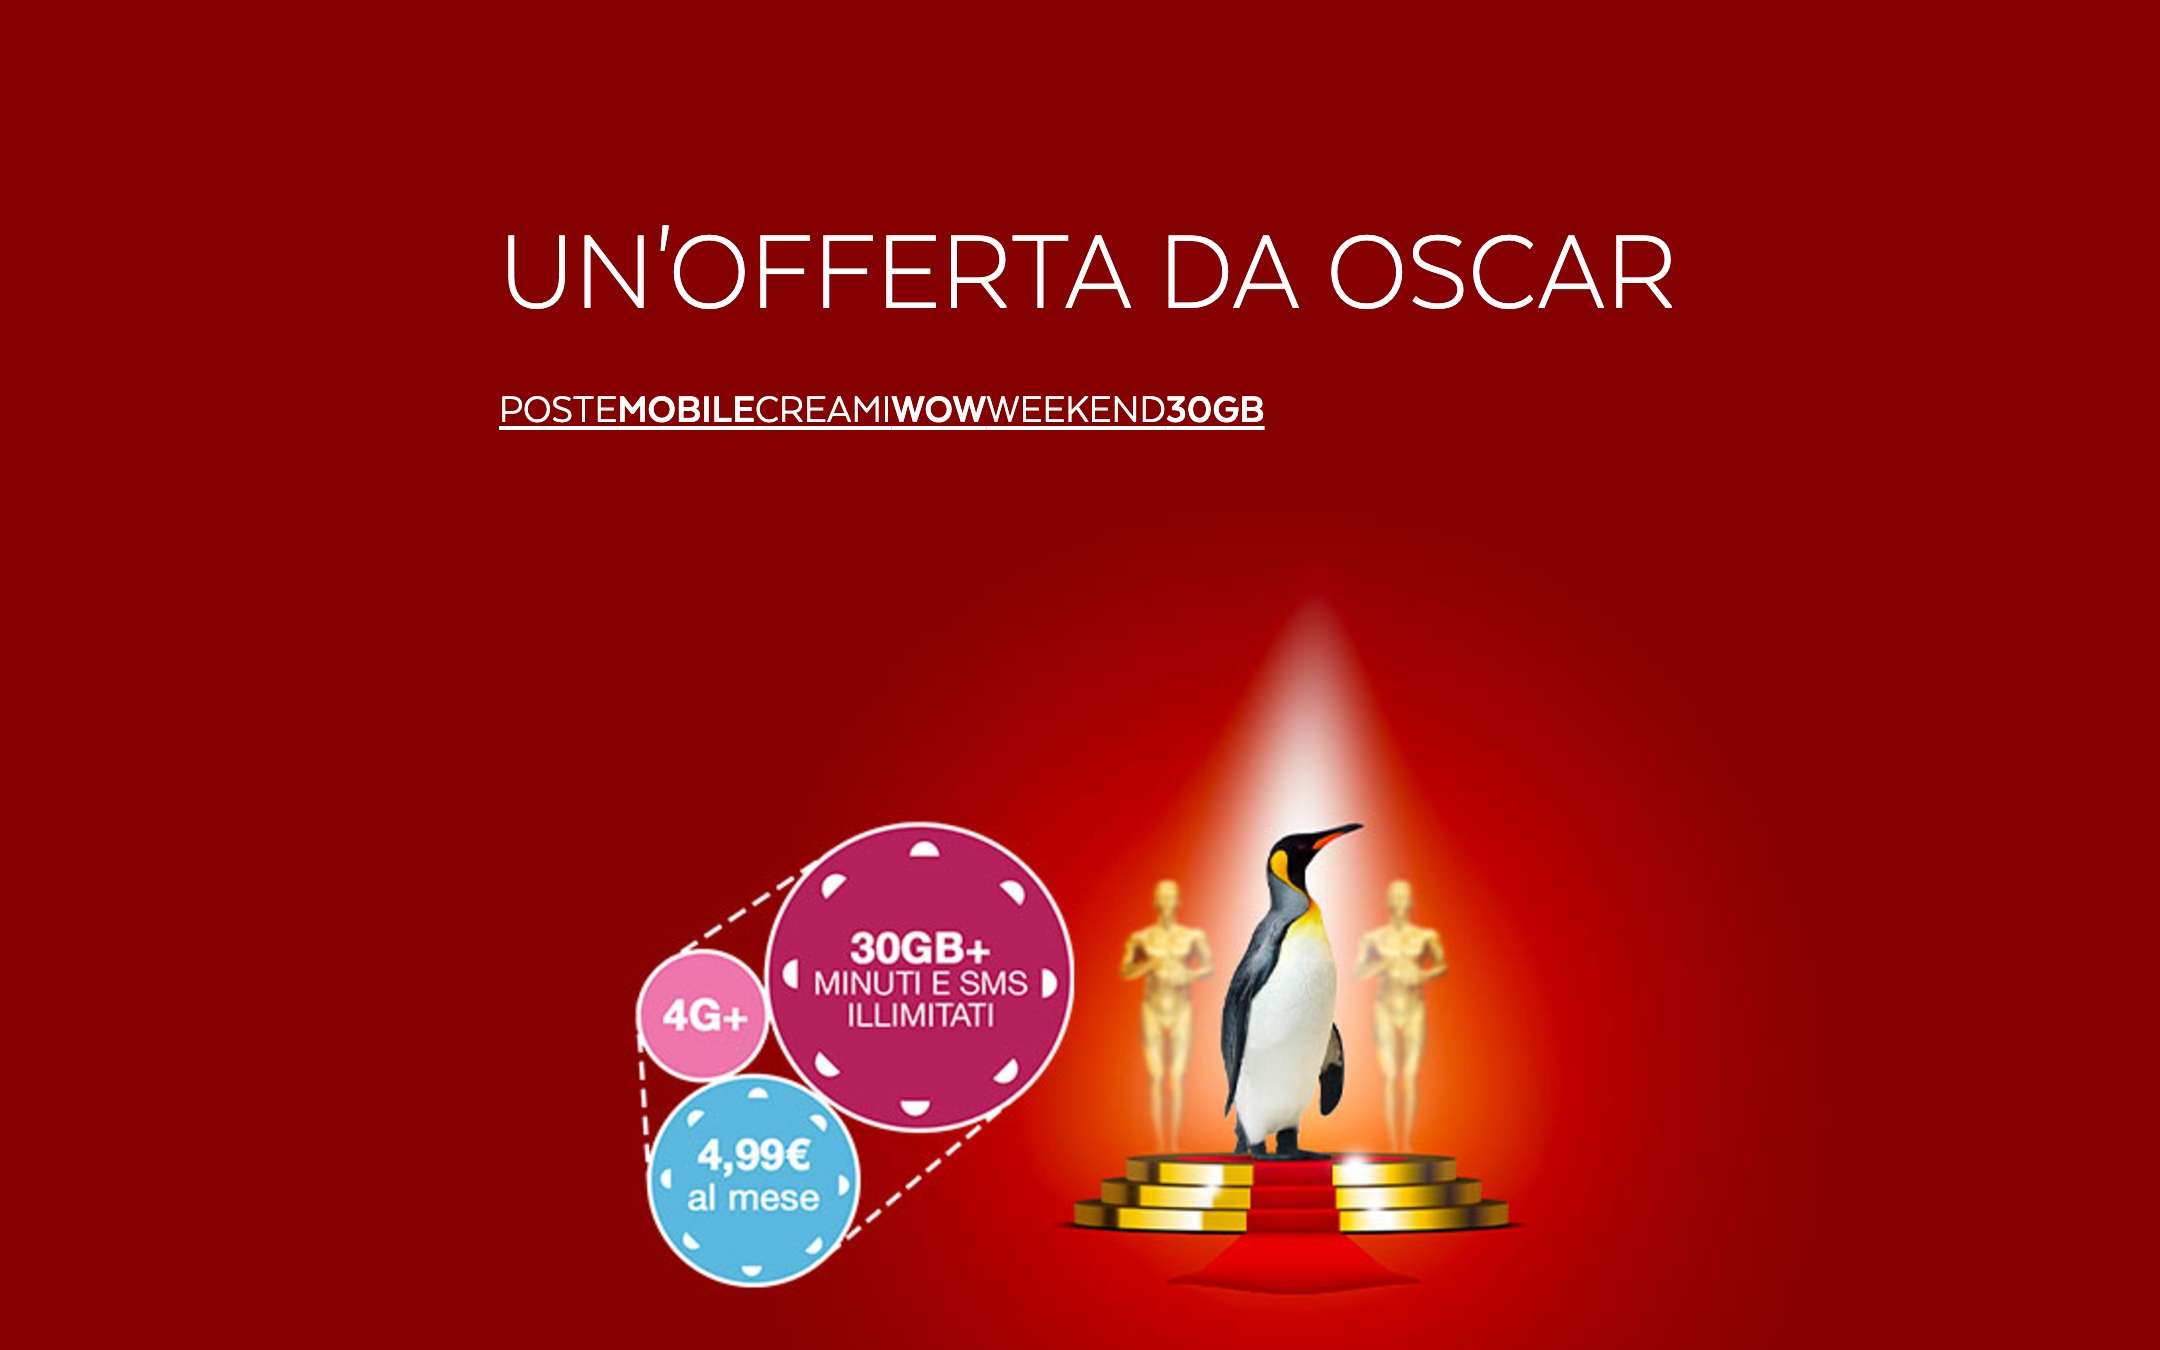 PosteMobile: Promo da Oscar a 4,99 euro al mese